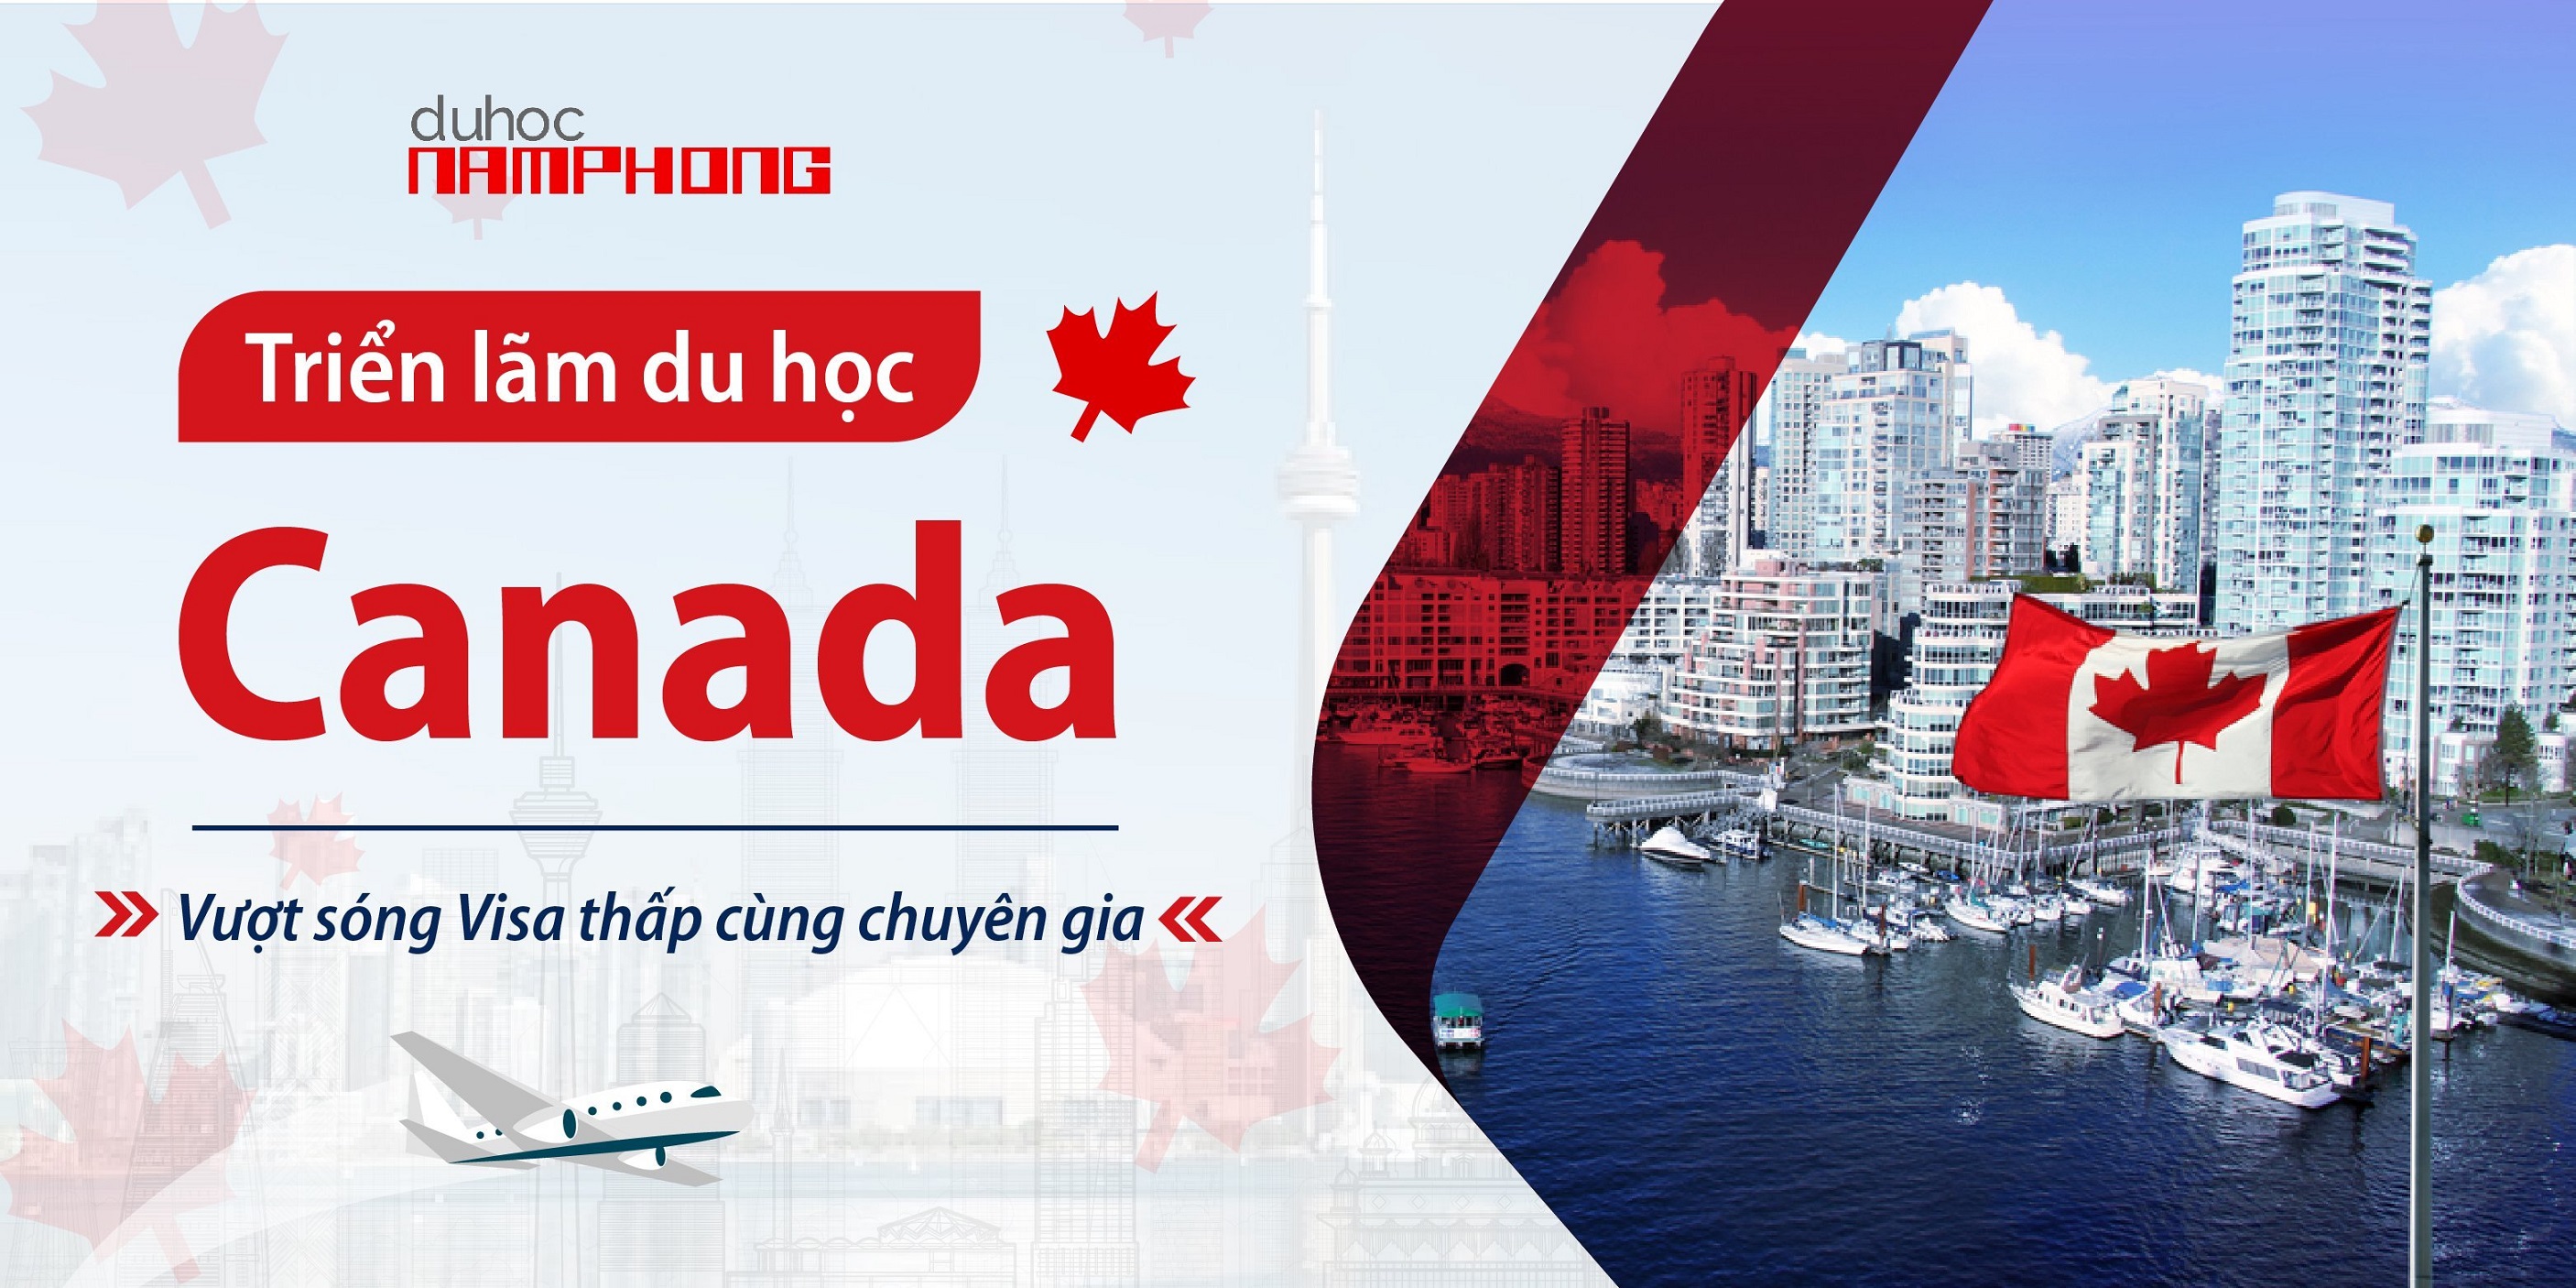 Triển lãm du học Canada - Vượt sóng tỷ lệ Visa thấp cùng chuyên gia